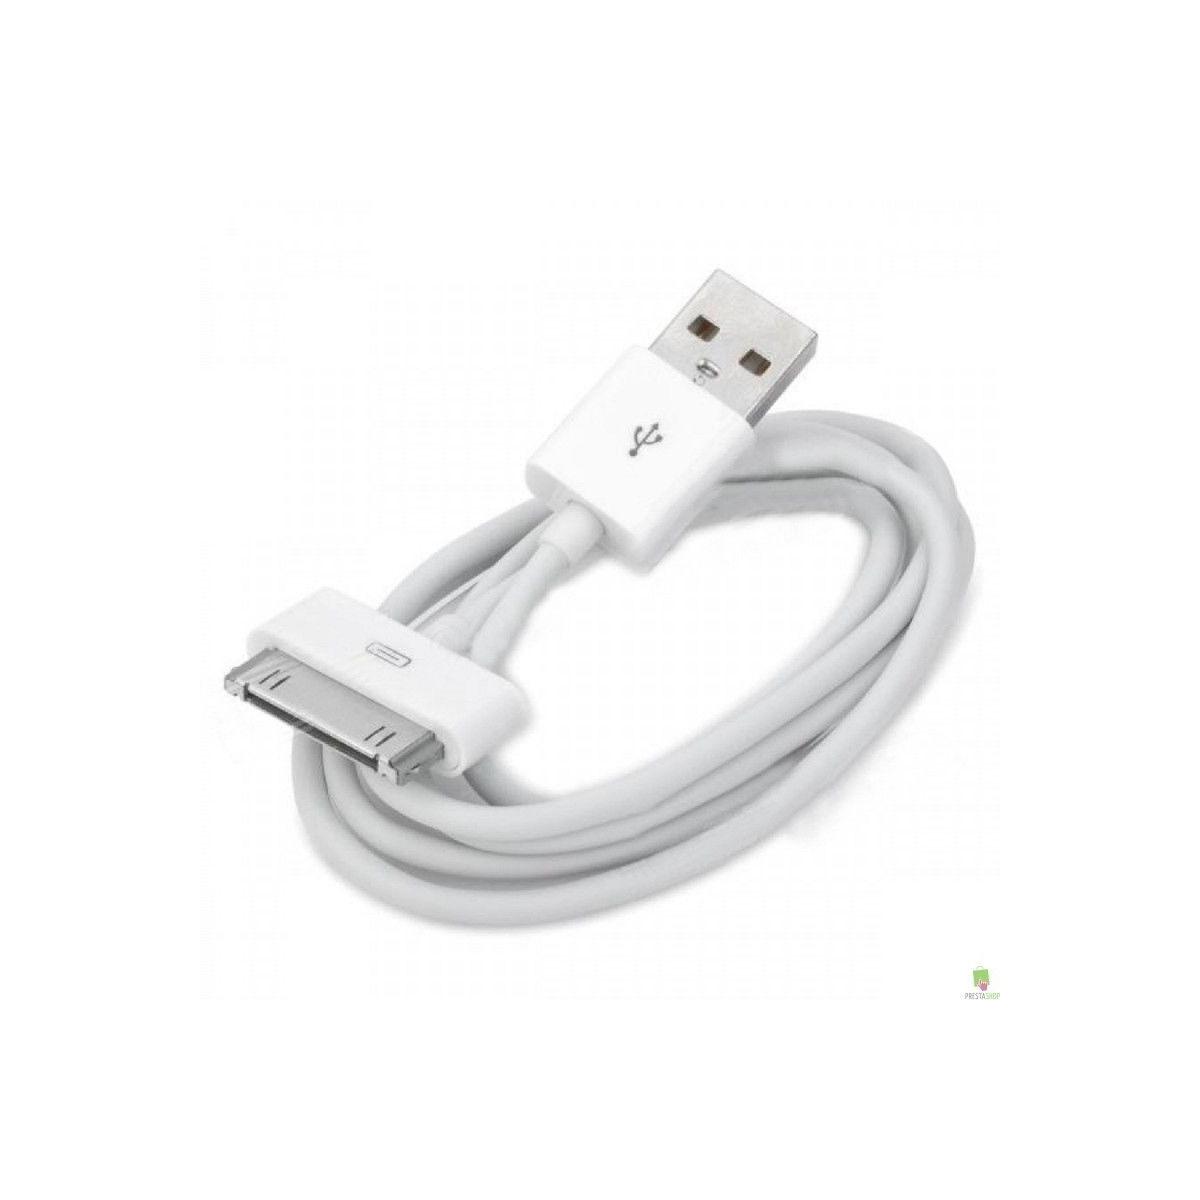 USB de carga datos para iPhone 3 3g 3gs 4 4g iPod iPad